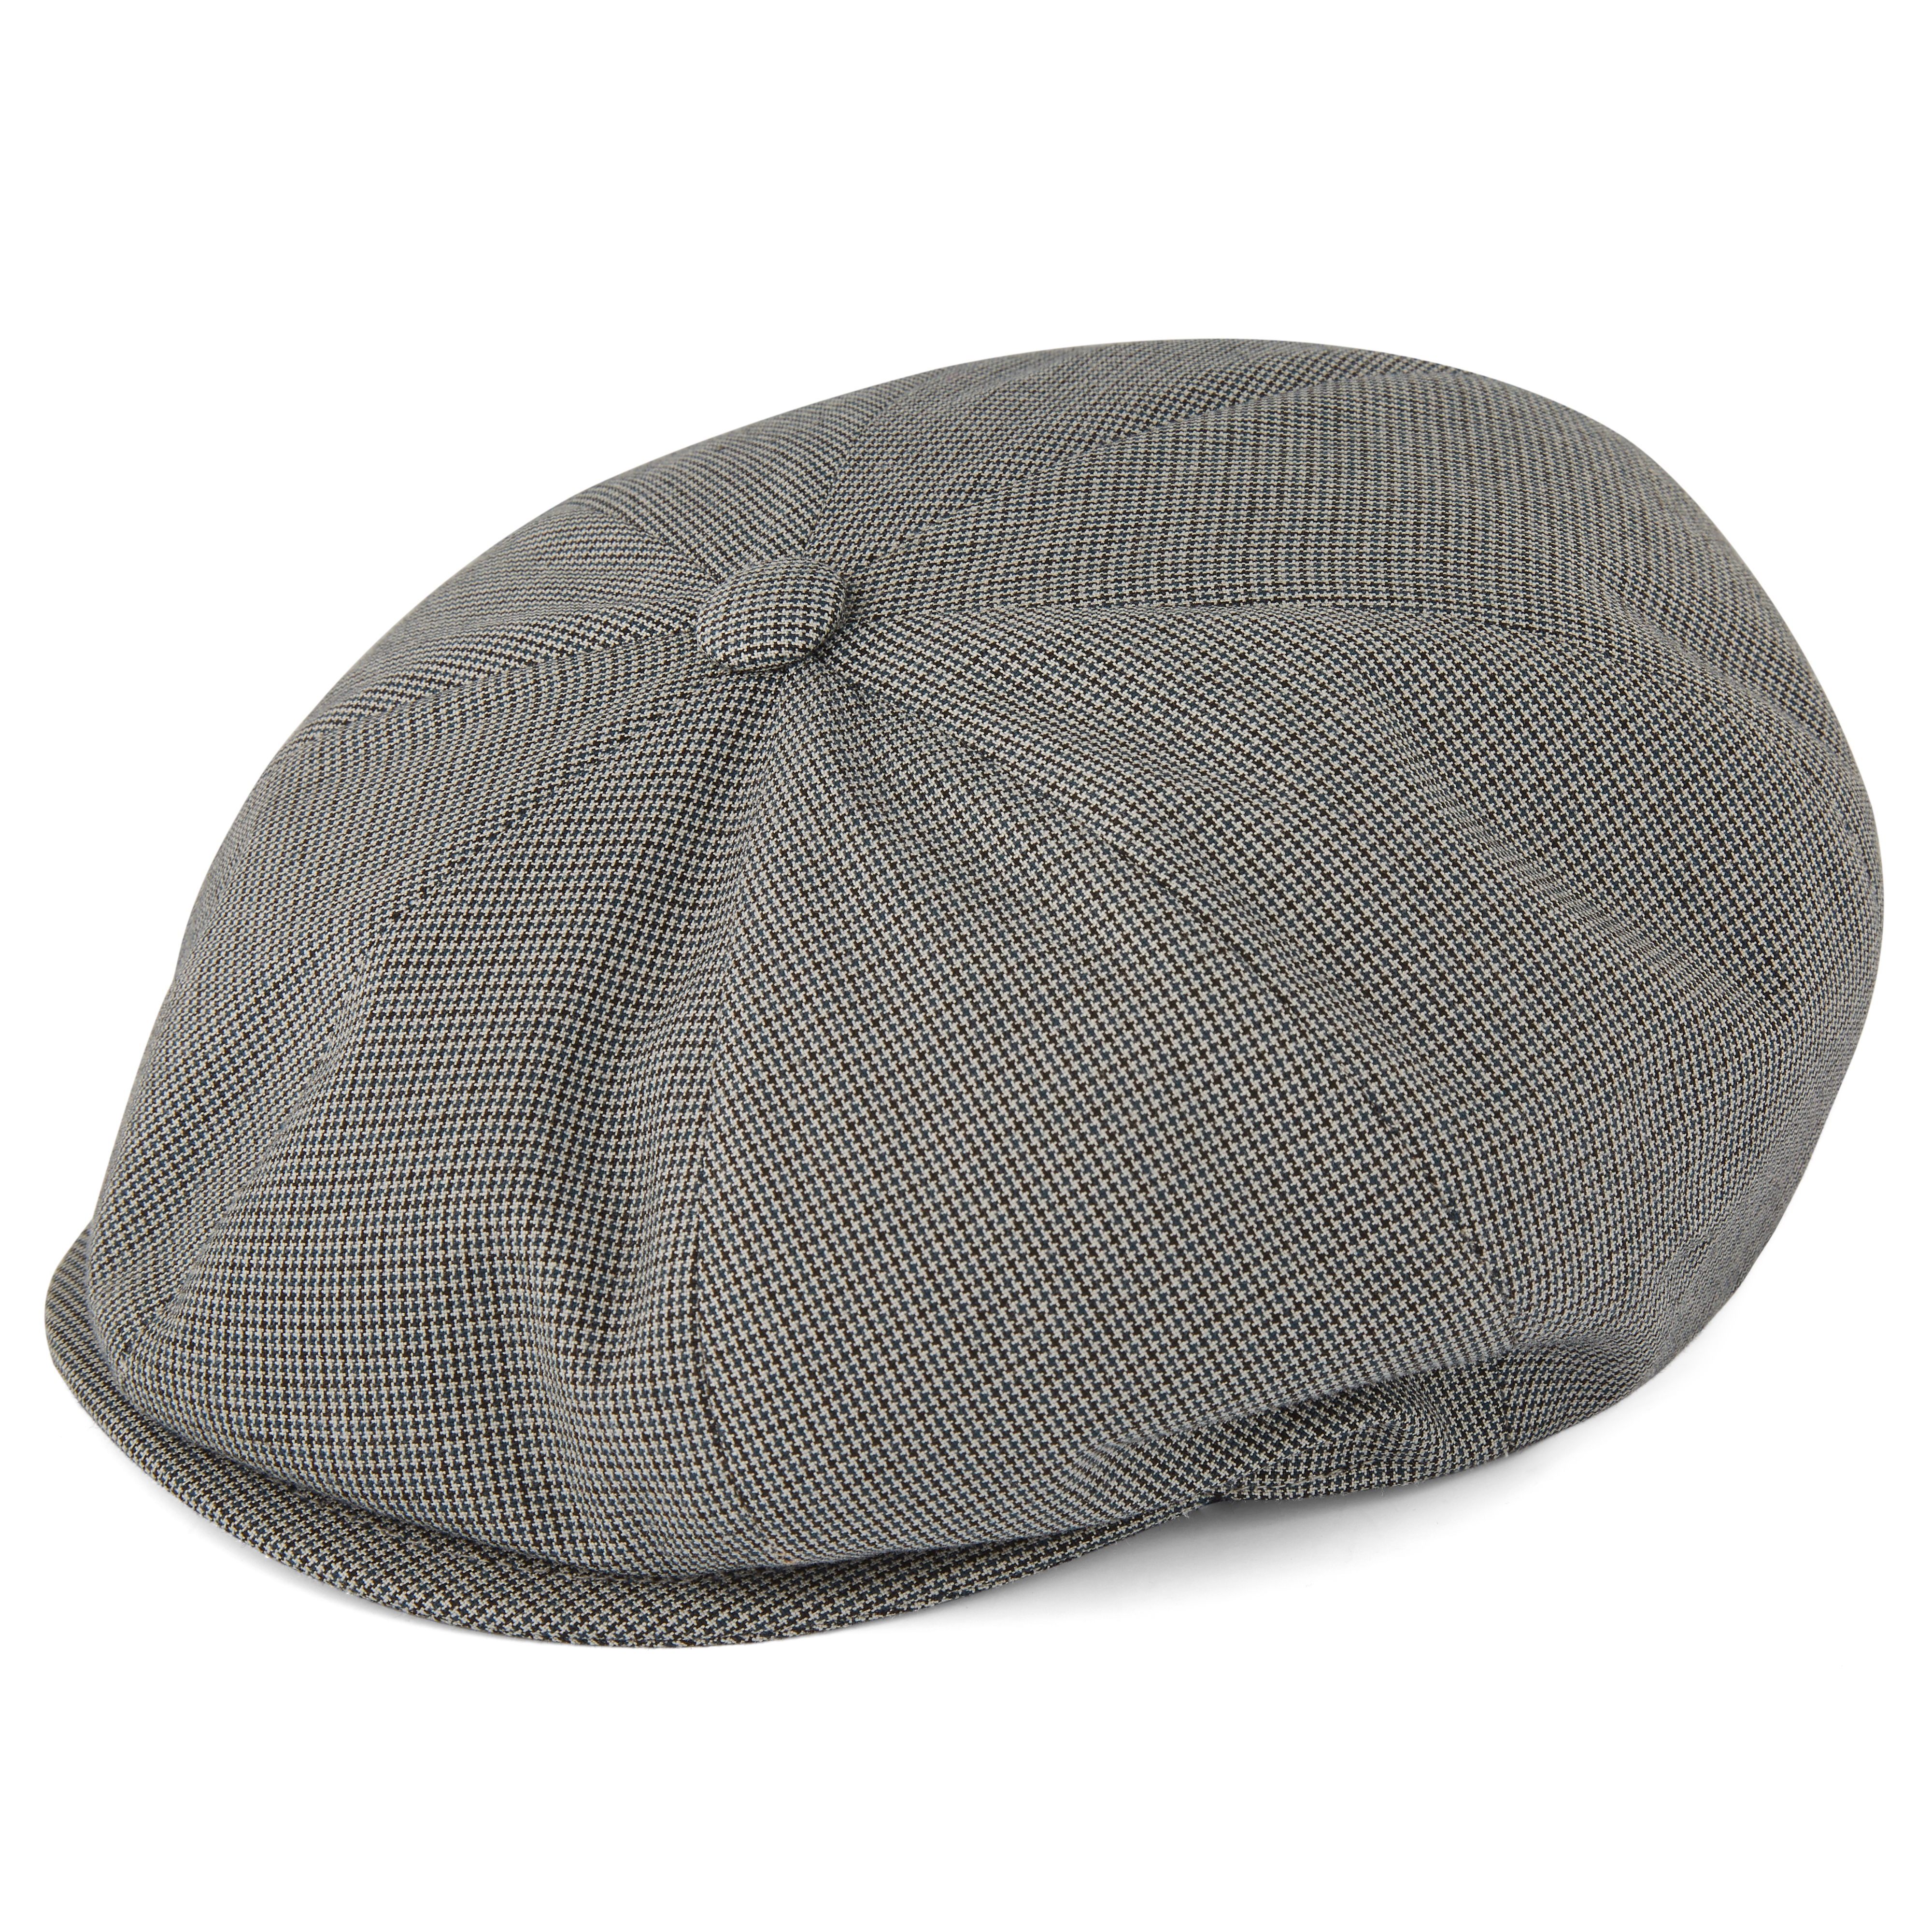 Mens Newsboy Cap, 100% Italian Wool Flat Cap, Scally Caps, Mens Ivy Hat, Mens Caps, Gatsby Hat, Newsboy Hat for Men